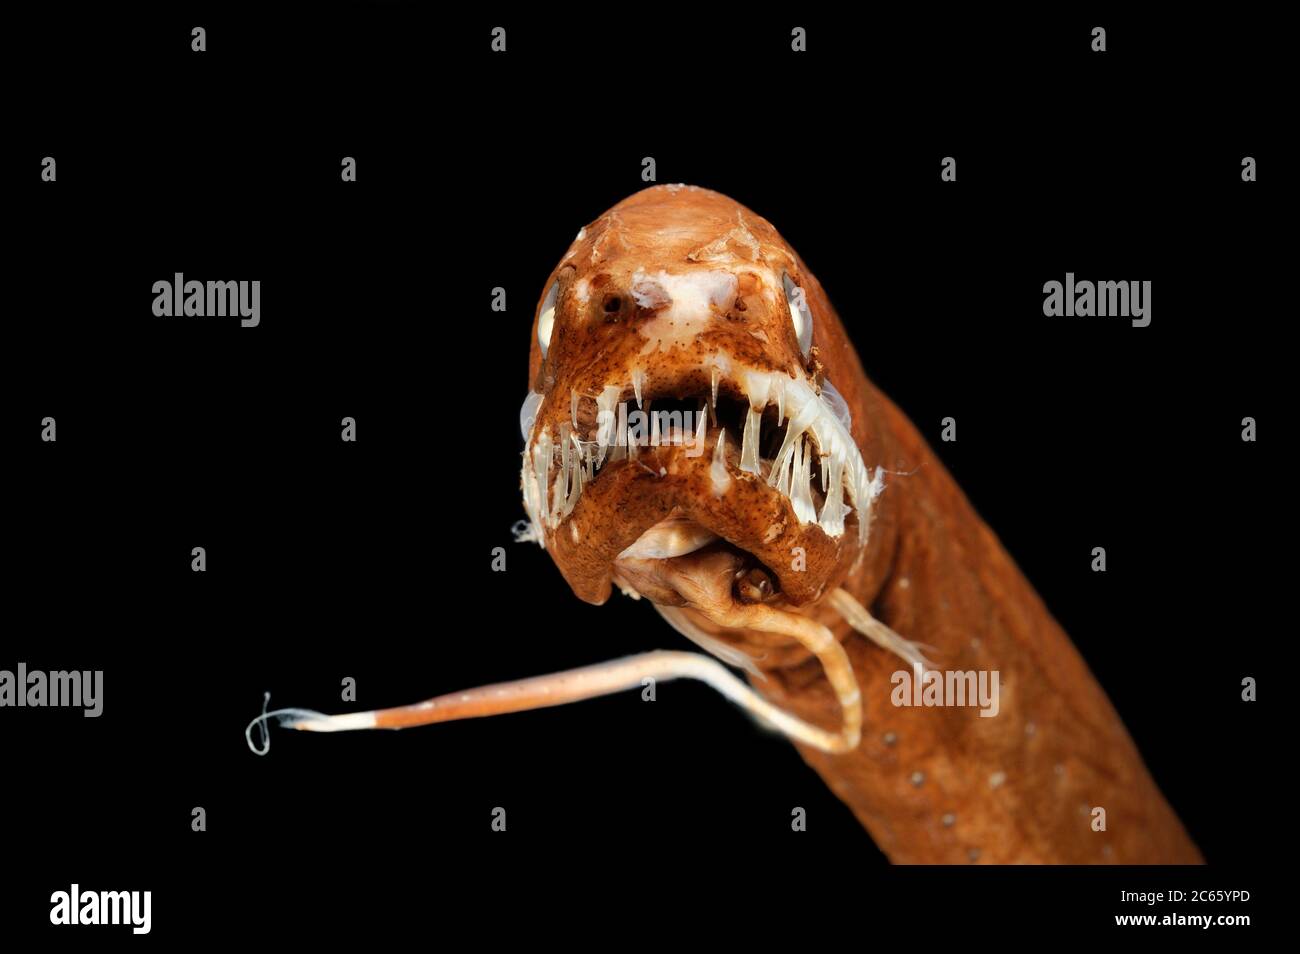 Der schuppenlose schwarze drachenfisch (Melanostomias melanops) ist ein schlanker, bis zu 30 cm langer Tiefseefisch. Es verfügt über einen fleischigen Biolumineszenz-Prozess am Kinn, verwendet, um Beute in Reichweite des stark gezähnten Mundes zu locken. Die Organe der Lichtaussender sind neben dem unteren Teil des Körpers und unter dem Auge angeordnet. Sie findet sich im Atlantik und im Indo-Pazifik. Konservierte Probe. Das Bild entstand in Kooperation mit dem Zoologischen Museum Universität Hamburg. Stockfoto